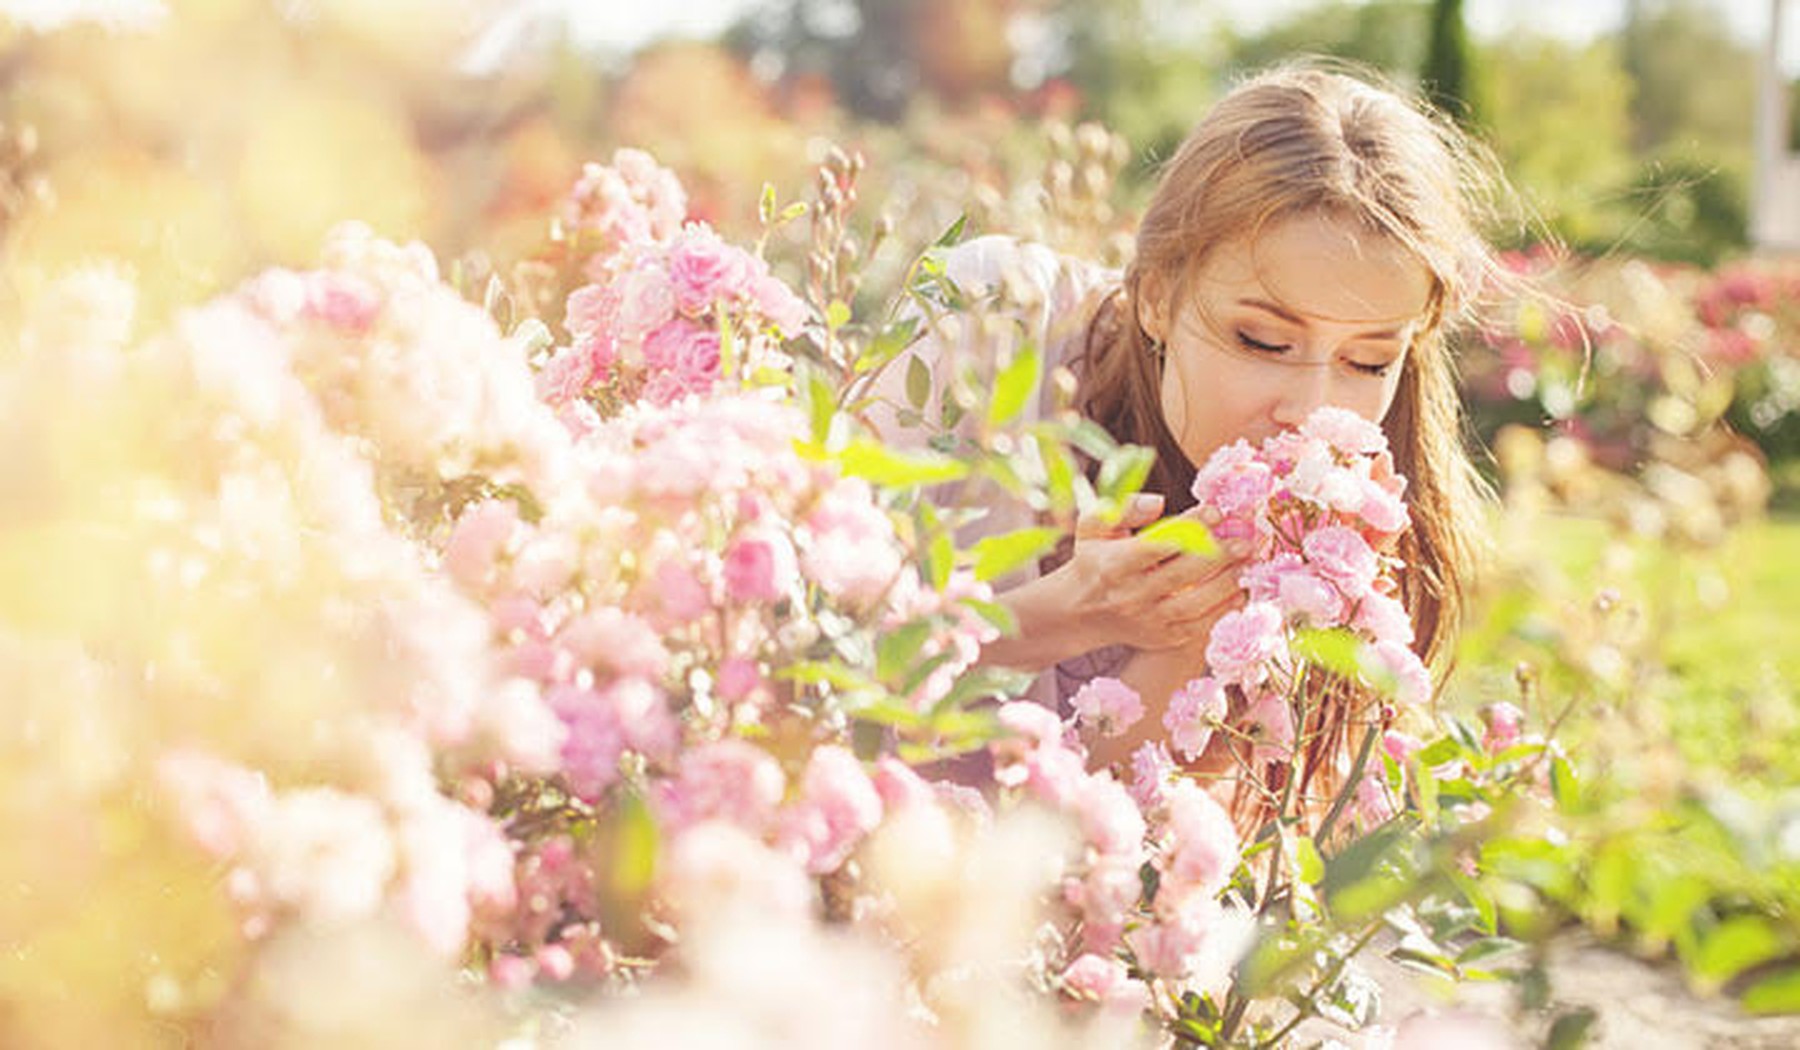 Een vrouw die buiten aan bloemen ruikt